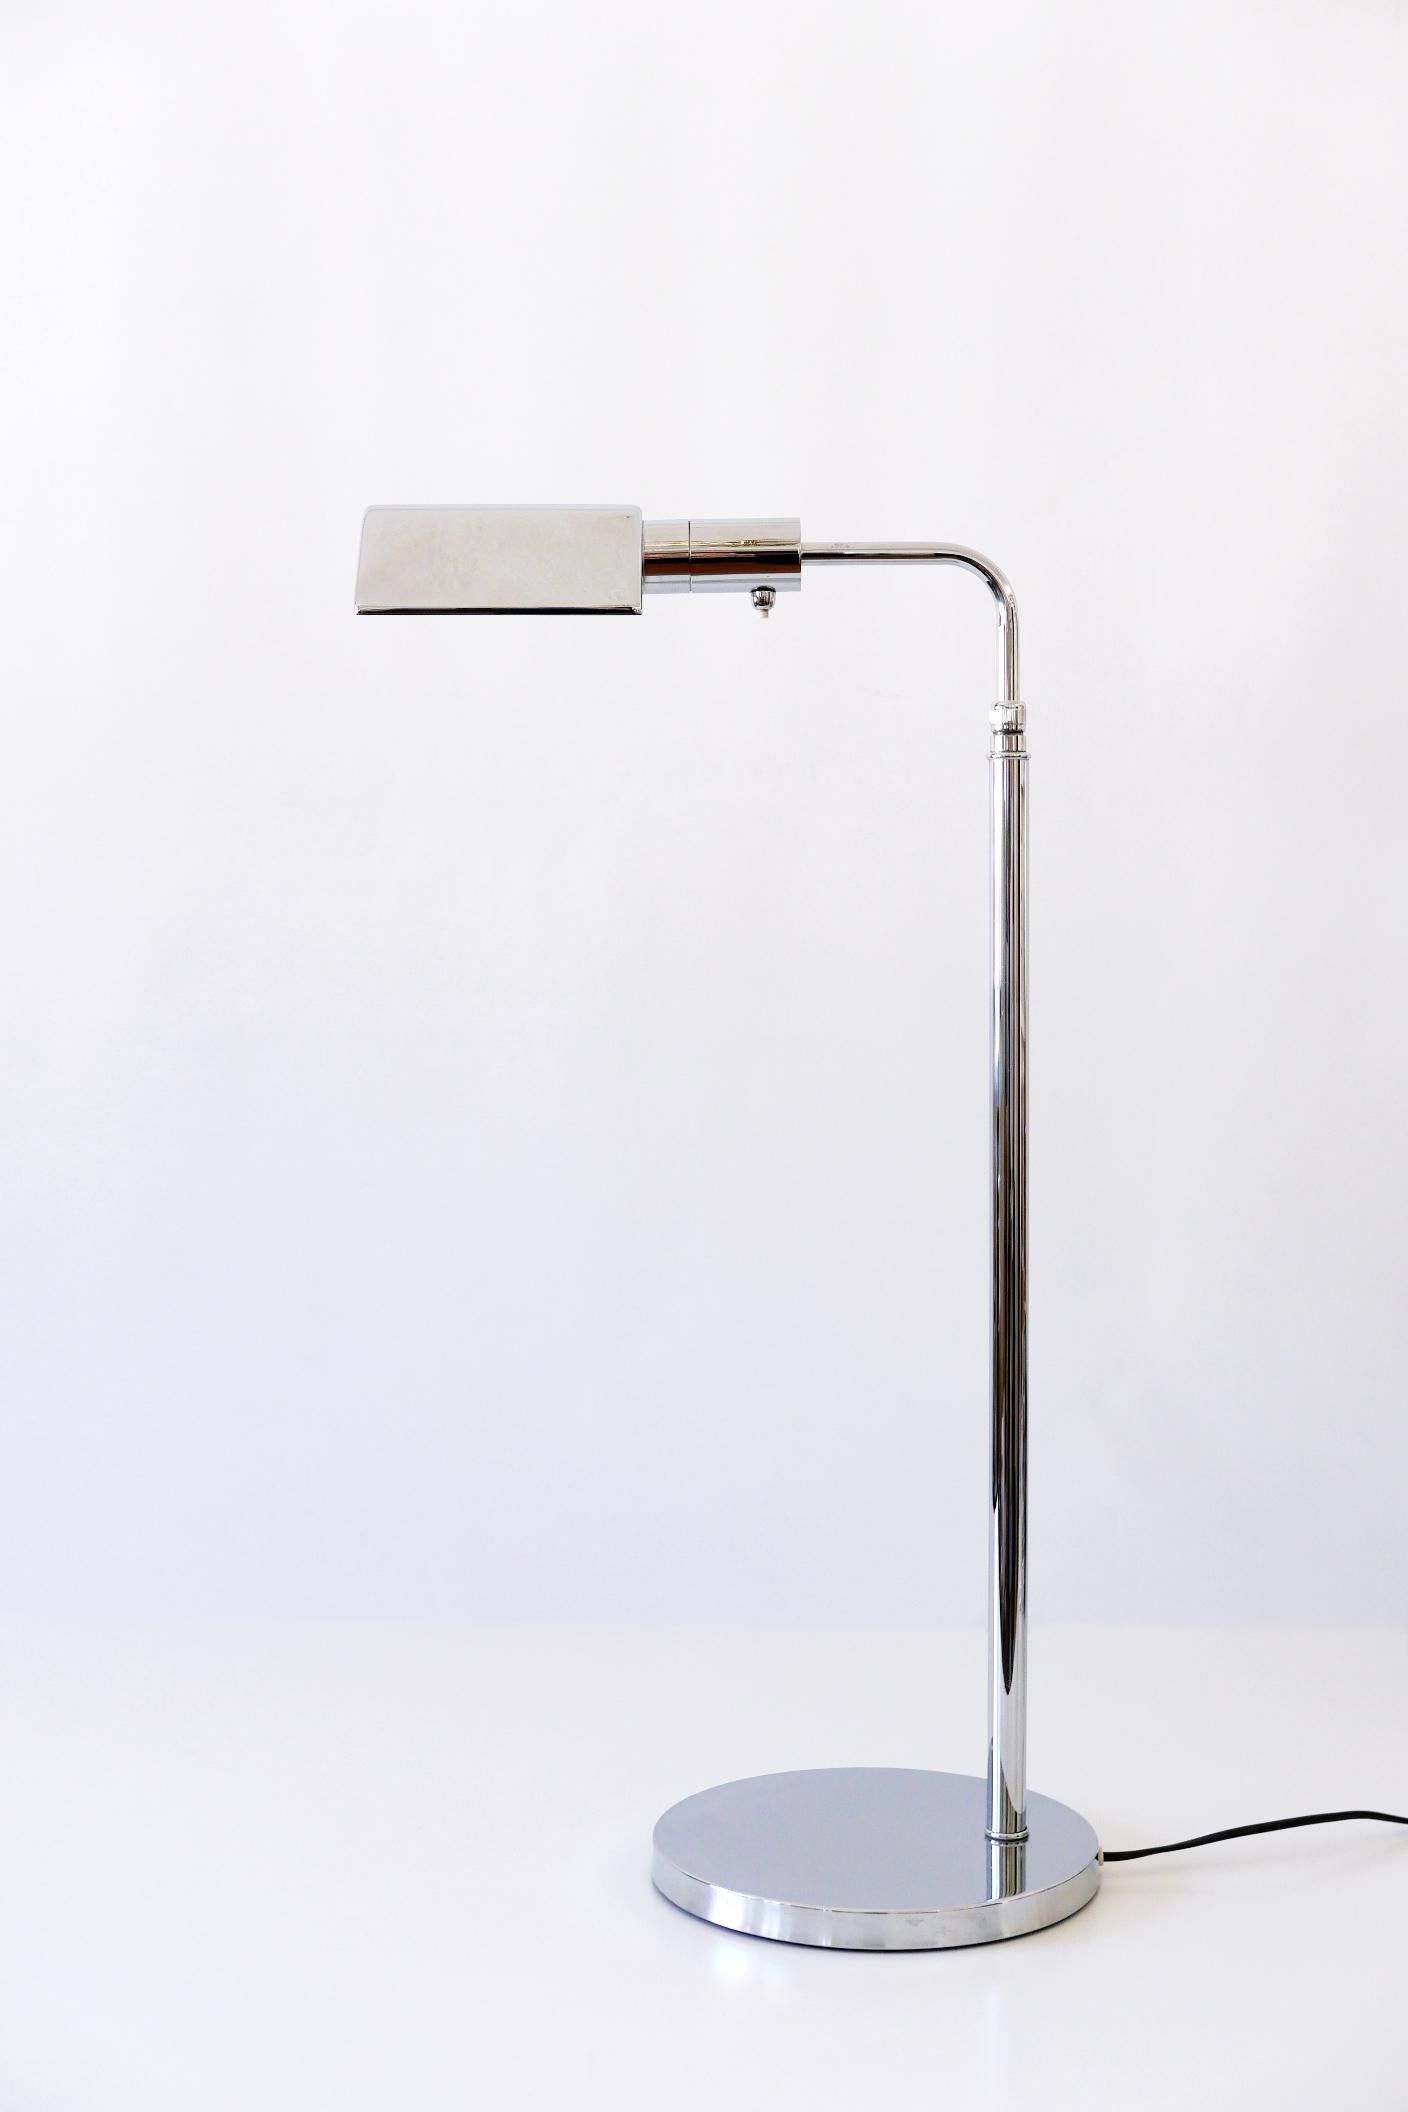 Elegant lampadaire ou liseuse Mid-Century Modern avec hauteur réglable et bras et abat-jour pivotants. Conçue et fabriquée dans les années 1970 en Allemagne.

Réalisée en laiton chromé, la lampe nécessite une ampoule à vis E27 Edison, est câblée et